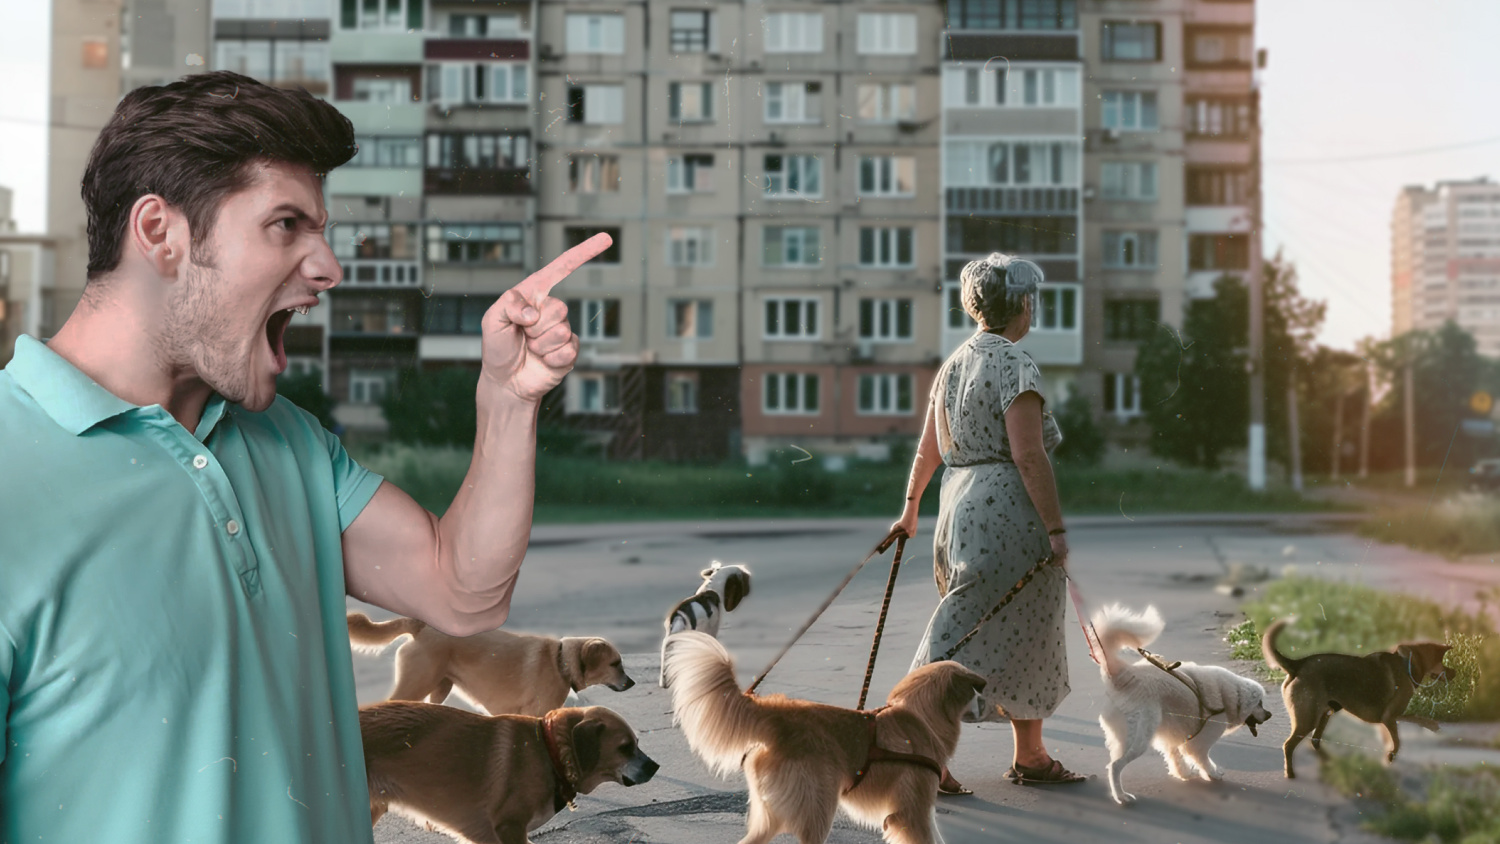 «Моча стекала по батареям»: москвич выселил соседских собак, которые ему мешали, — как он это сделал